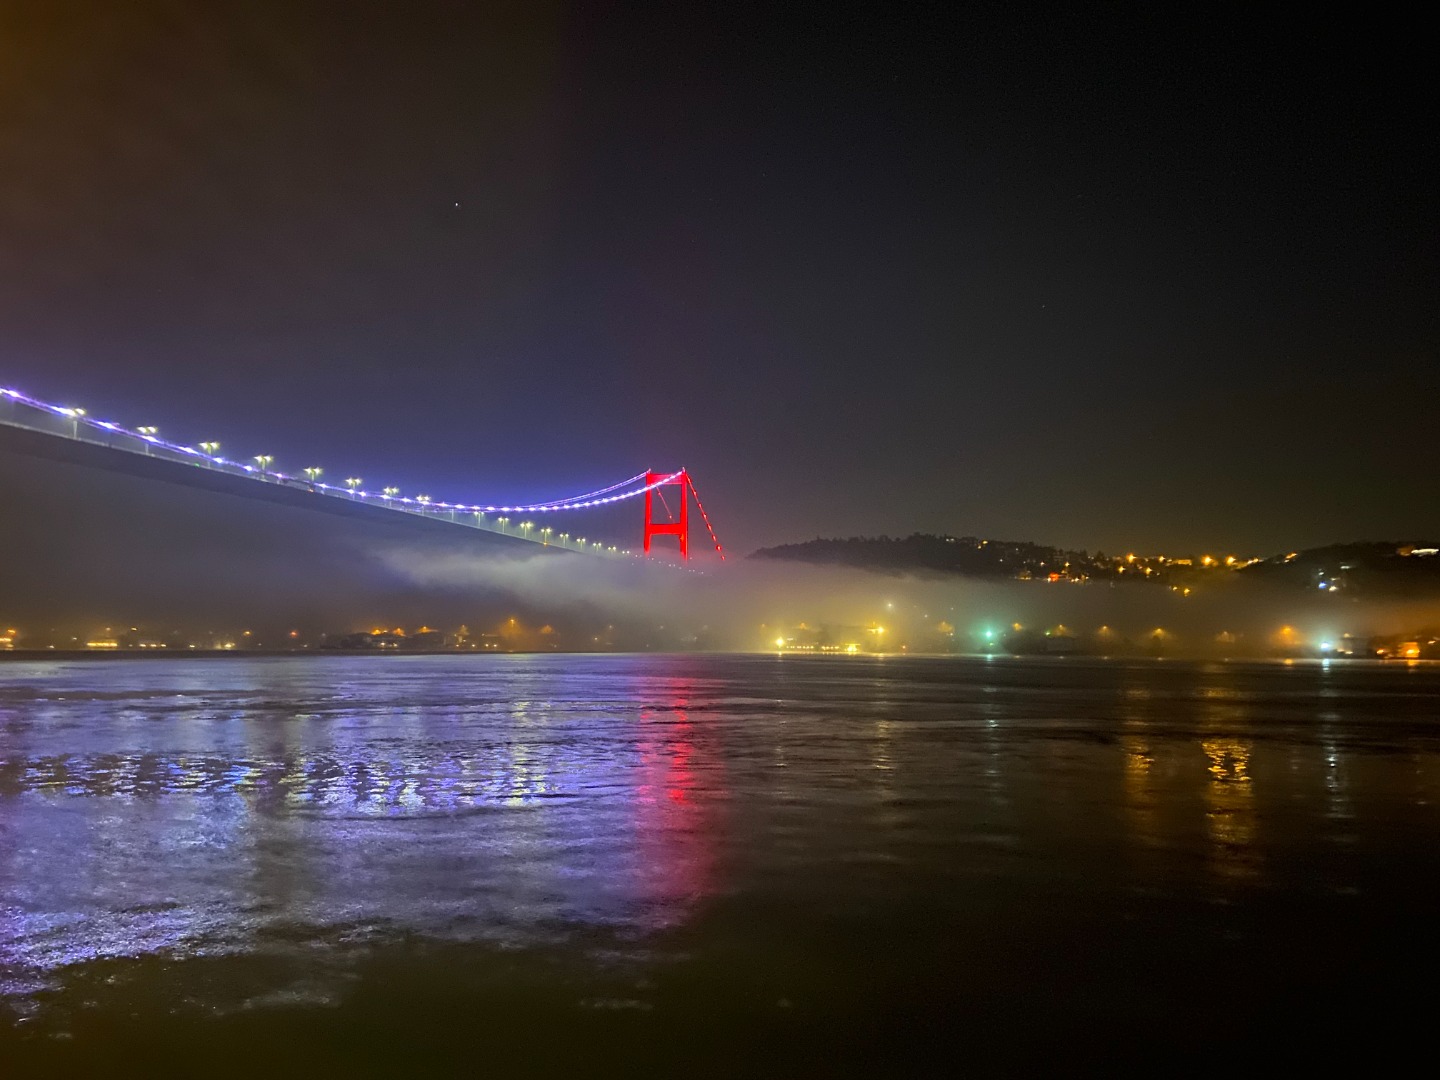 İstanbul Boğazı gemi trafiğine çift yönlü olarak kapatıldı